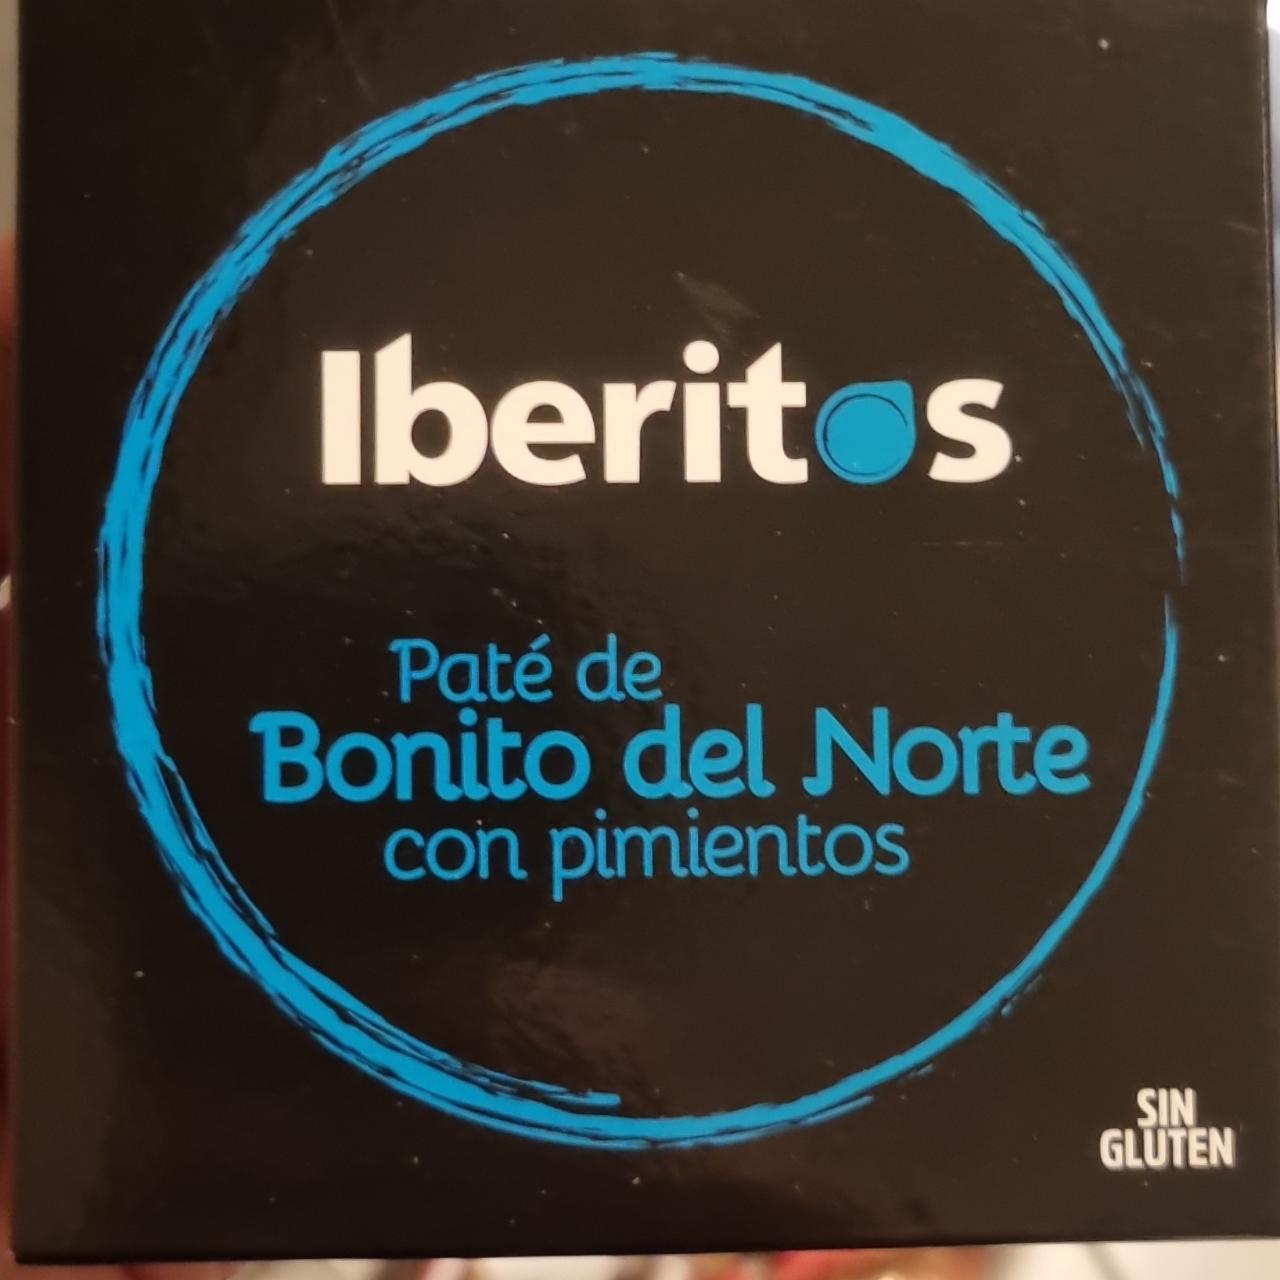 Fotografie - Paté de Bonito del Norte con pimientos Iberitos